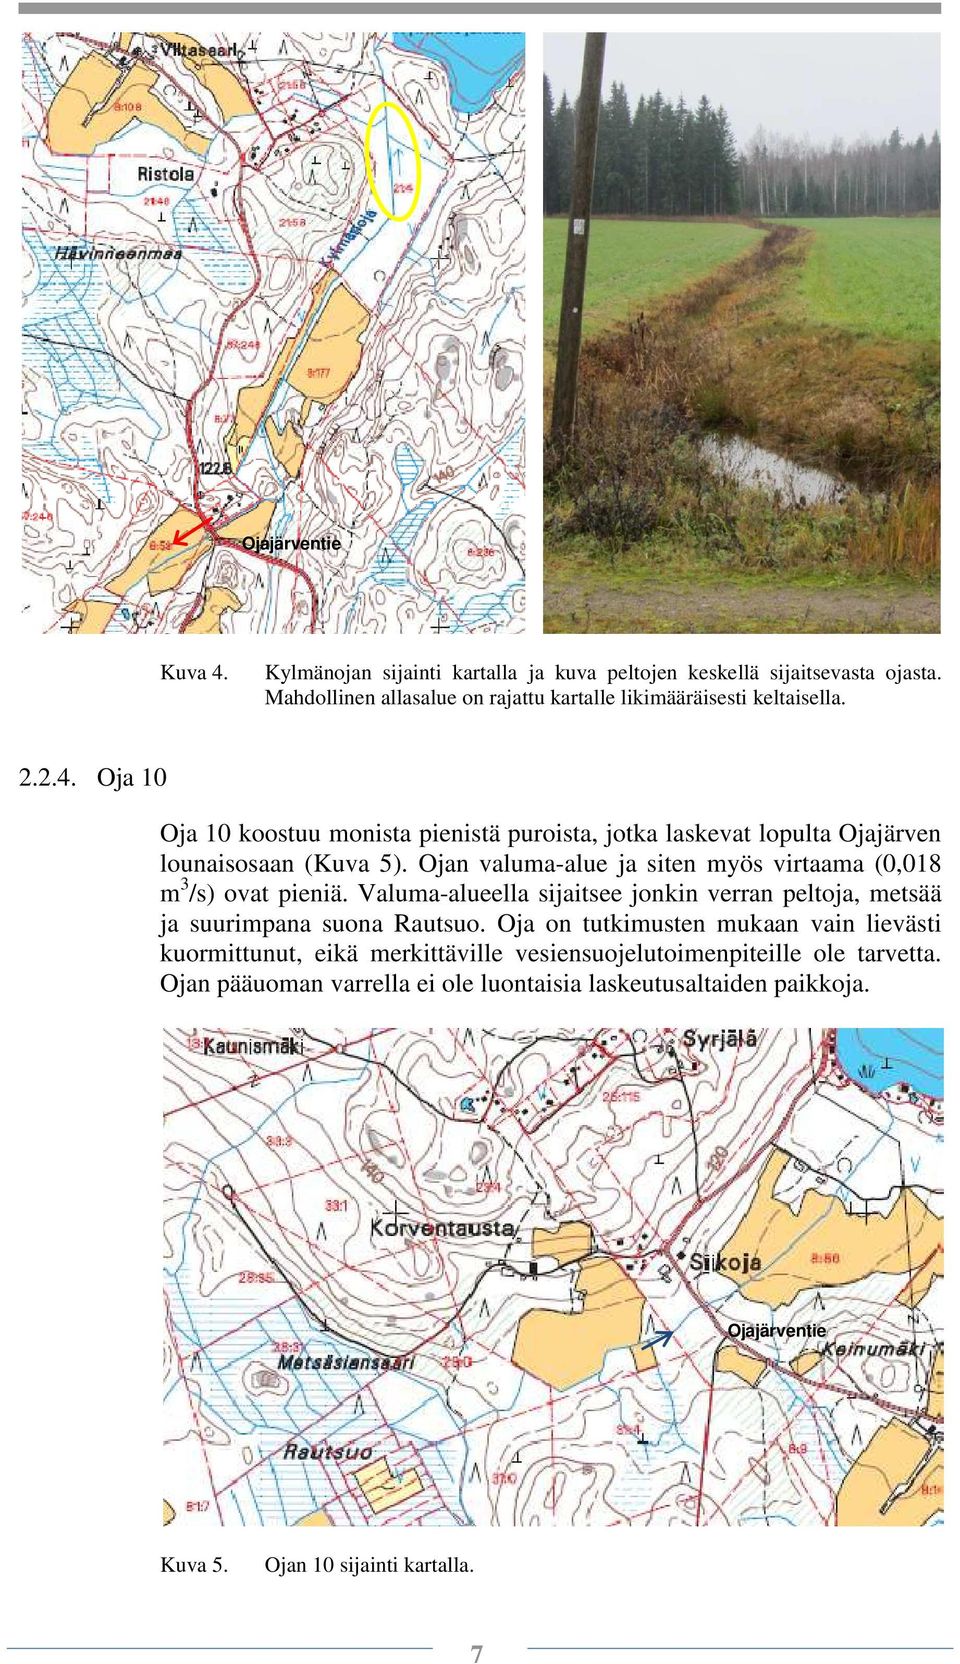 Oja 10 Oja 10 koostuu monista pienistä puroista, jotka laskevat lopulta Ojajärven lounaisosaan (Kuva 5).